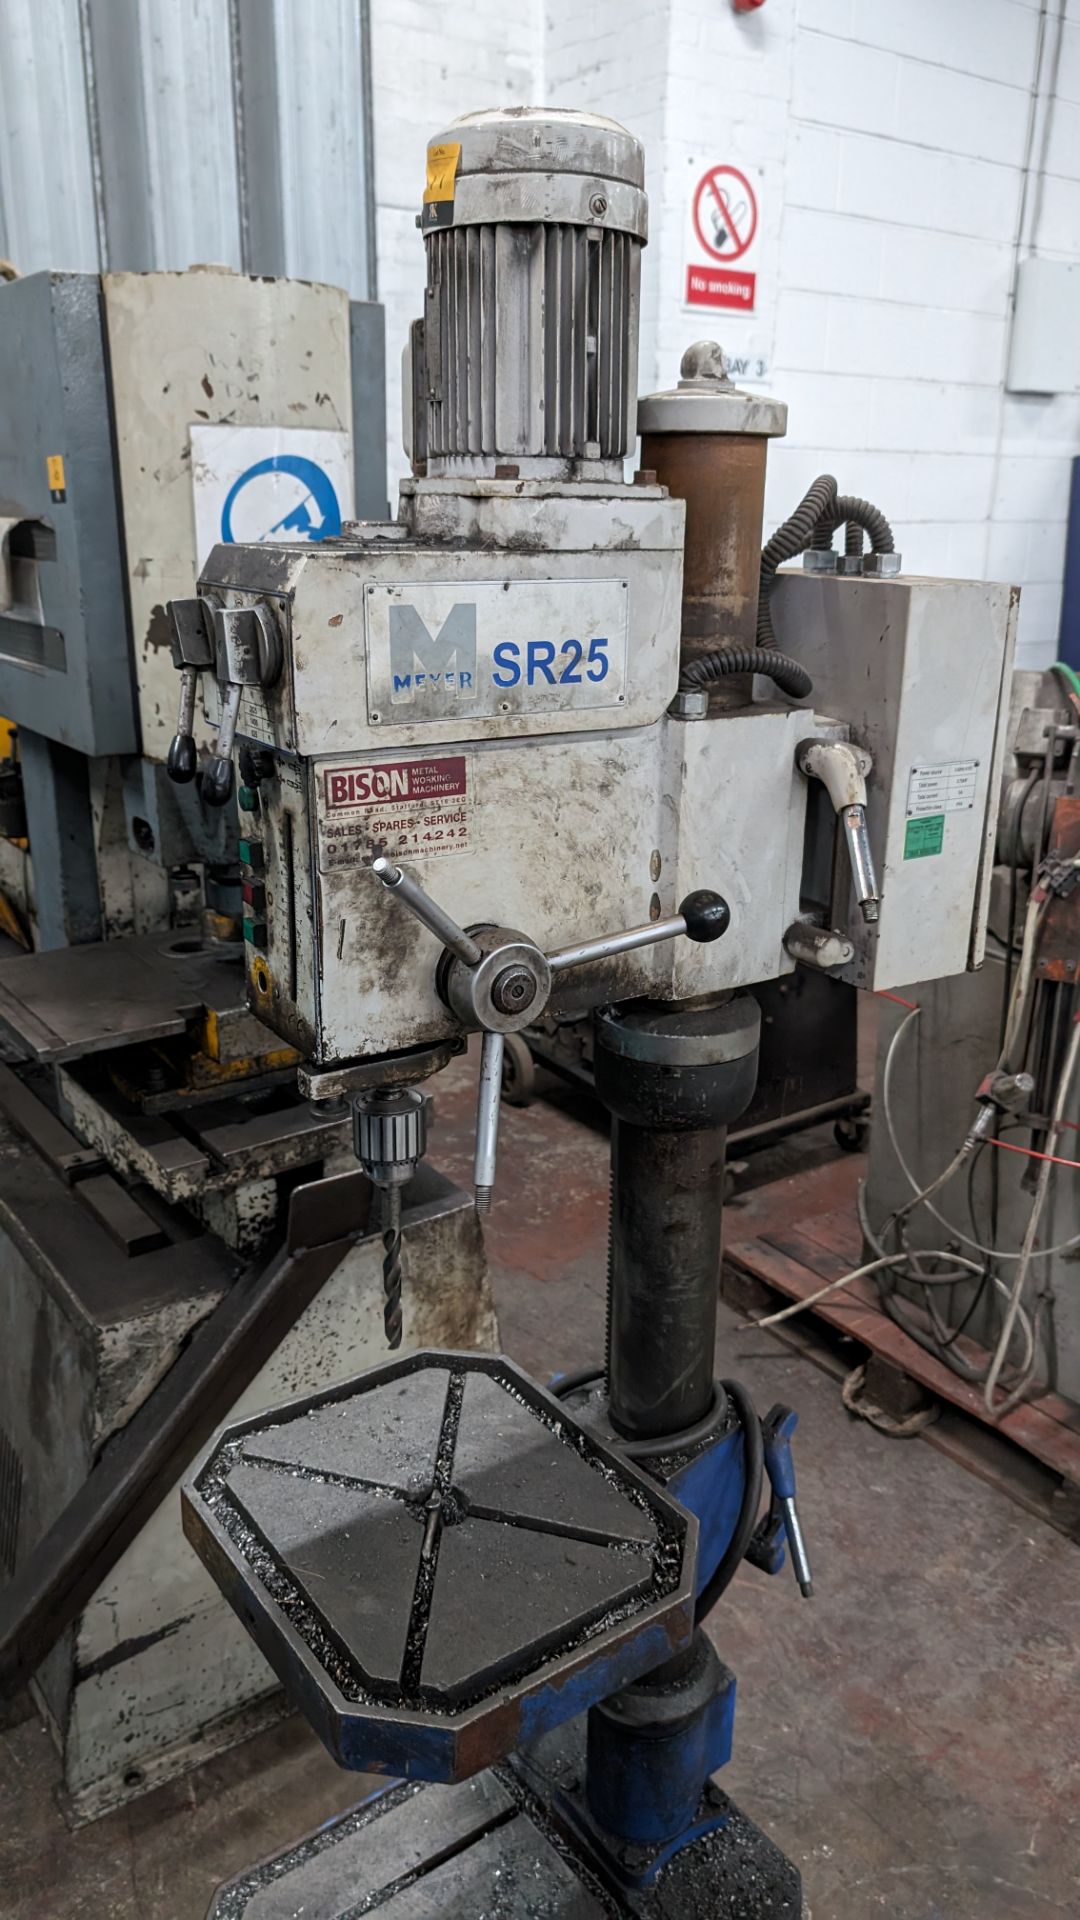 Meyer model SR25 vertical drilling machine - Image 6 of 11